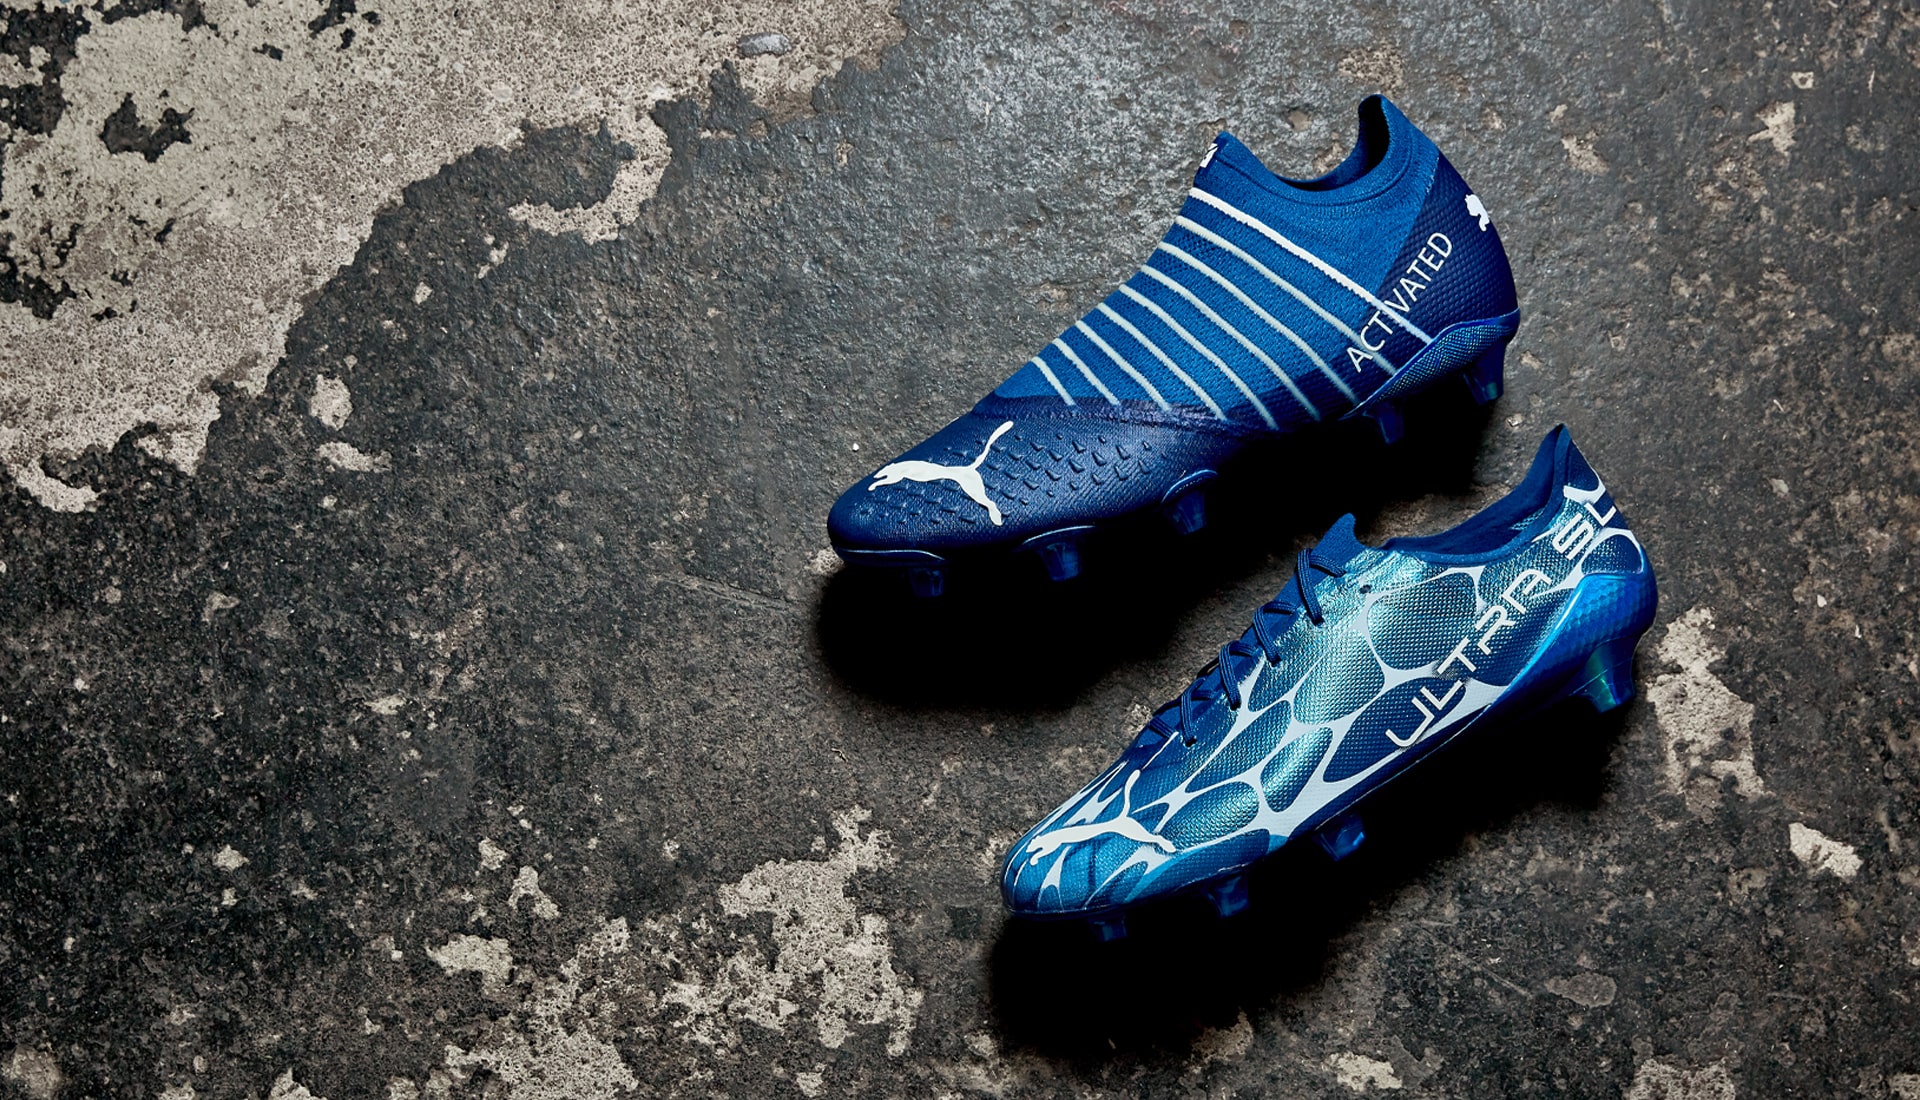 Puma phát hành BST giày đá bóng mới có thể phát sáng trong bóng tối | 'Glow In The Dark'